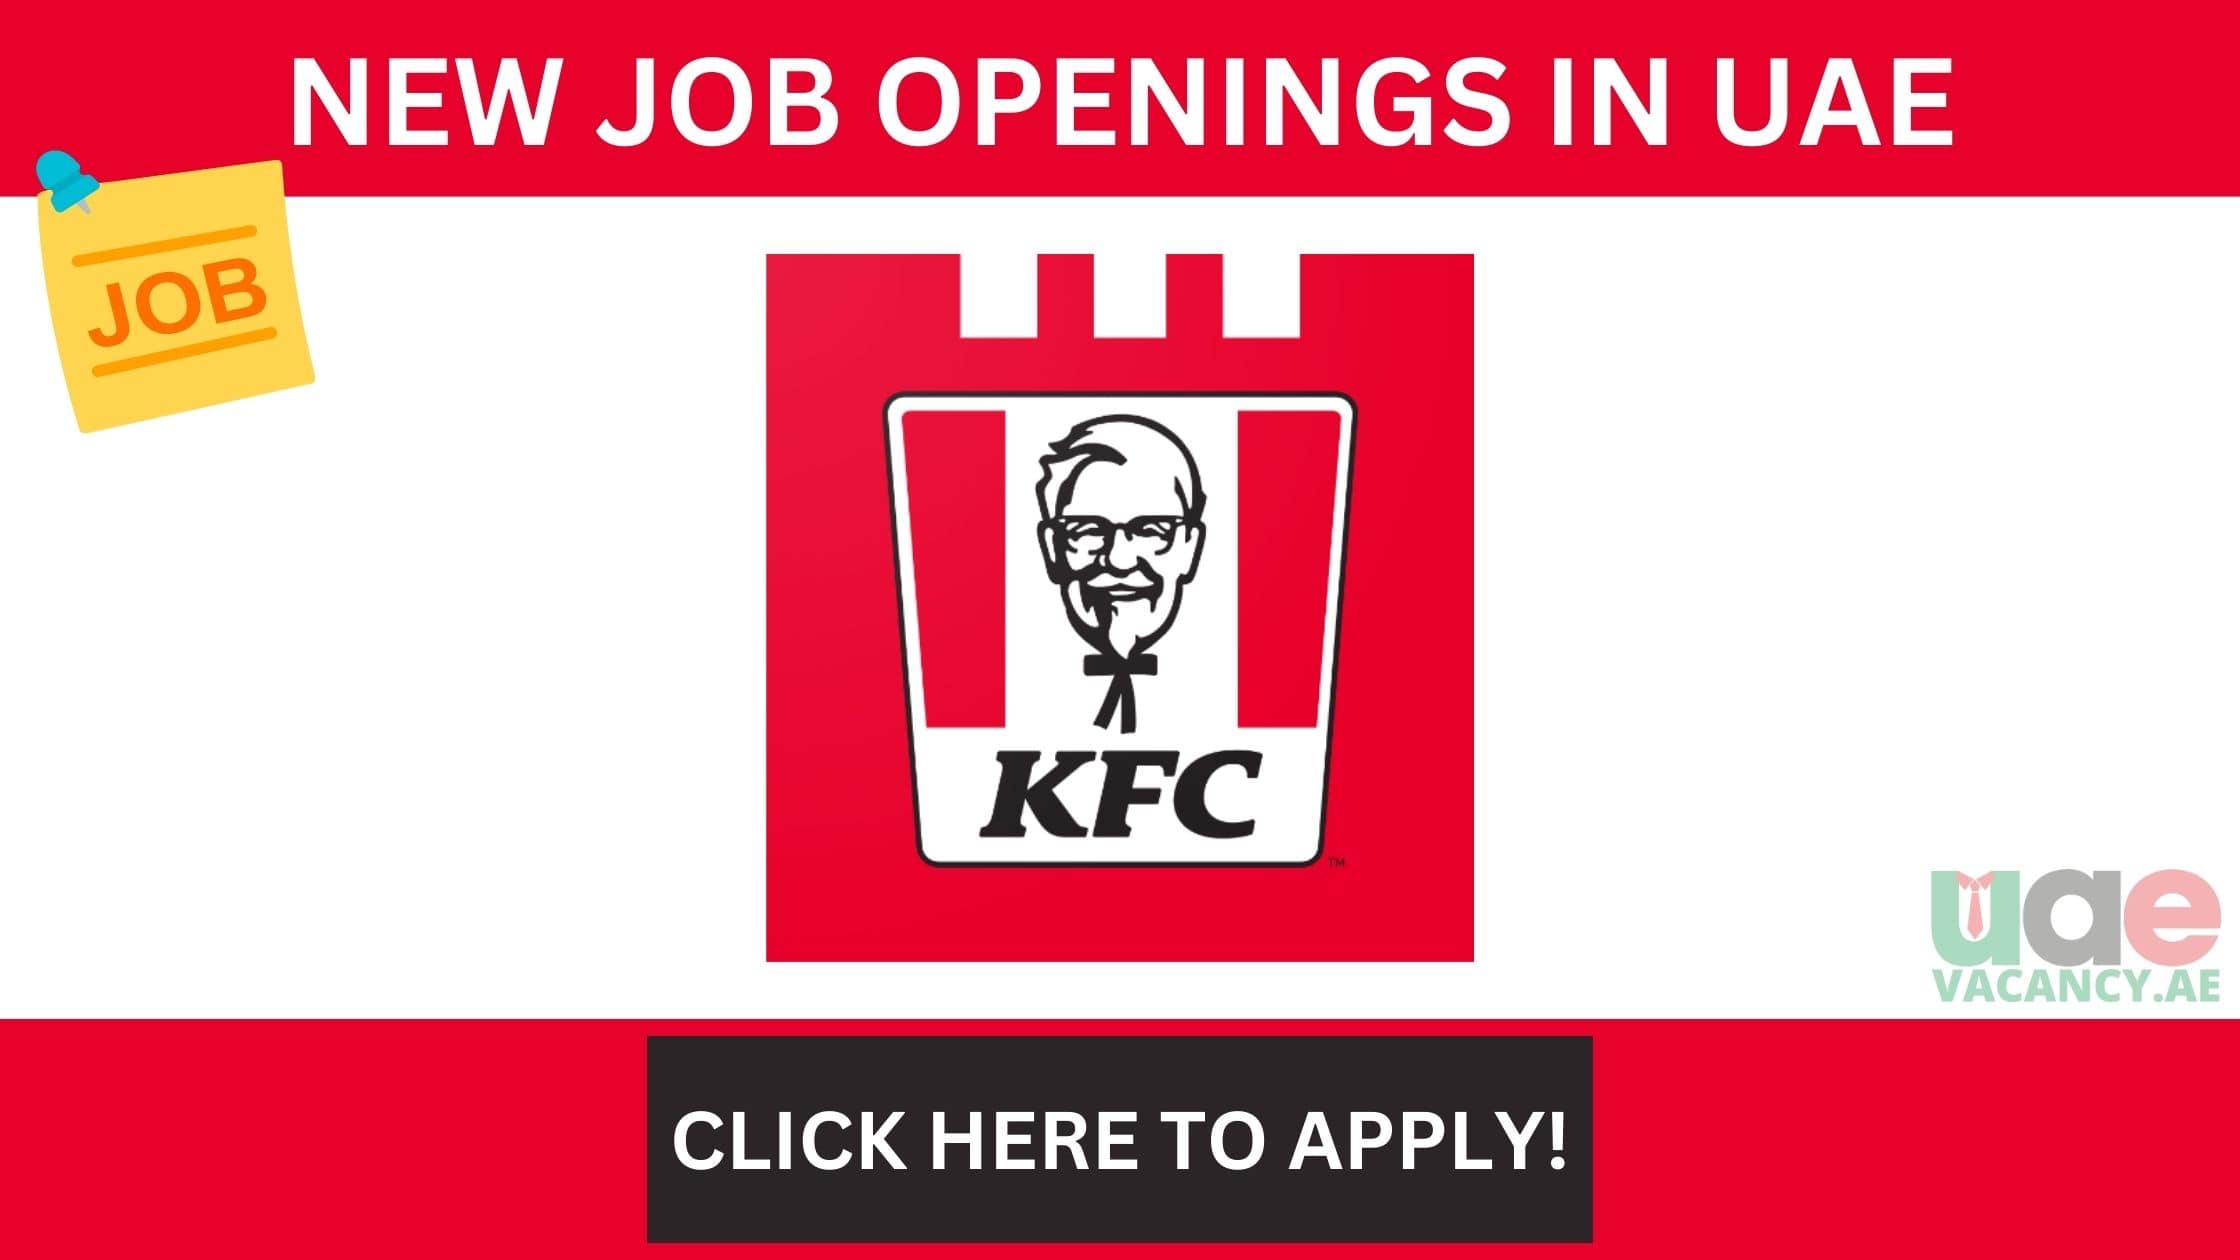 KFC Careers in UAE